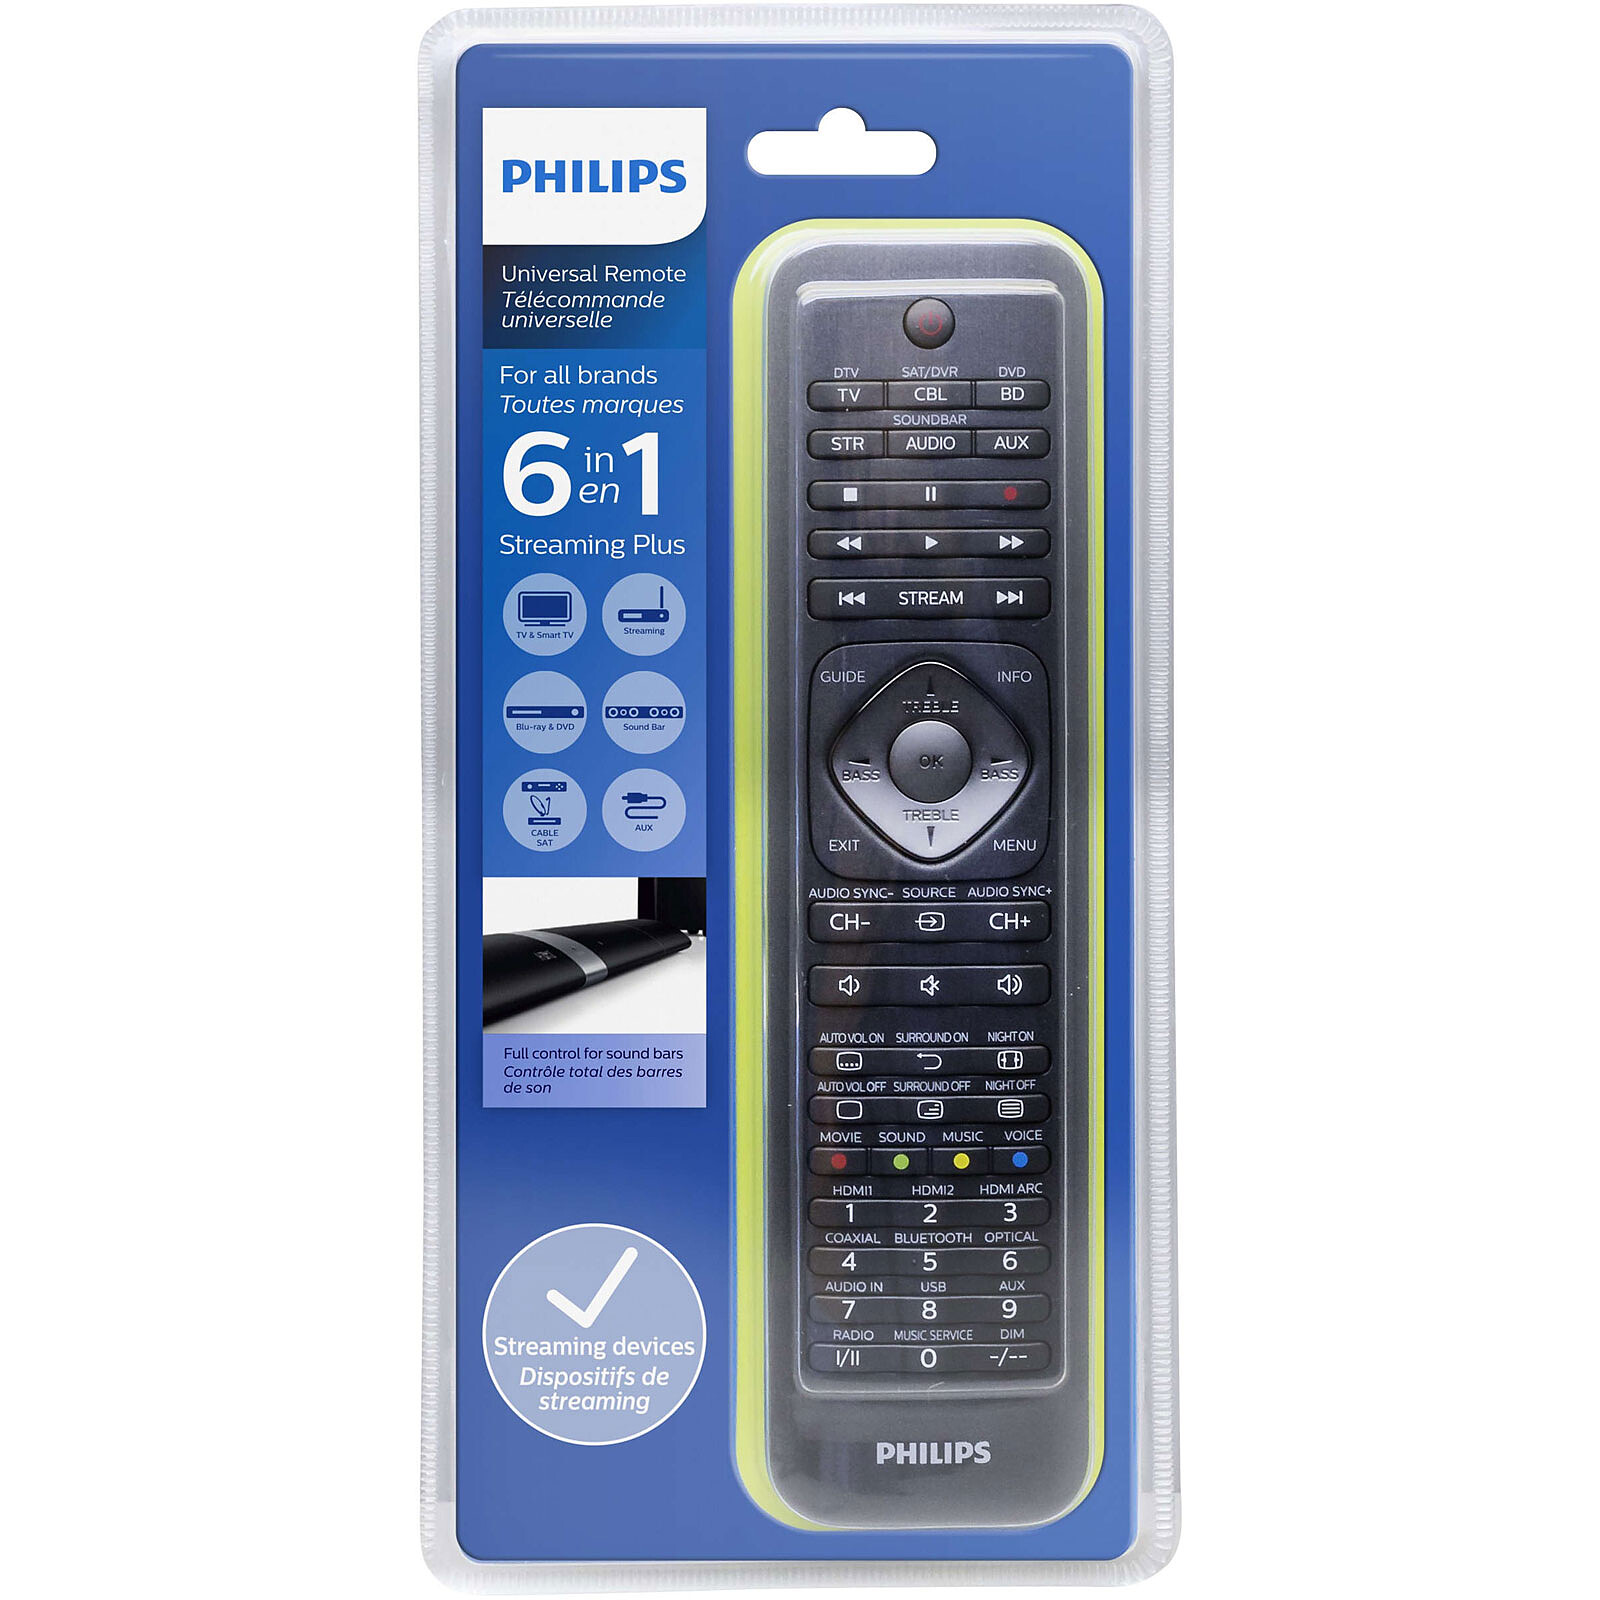 Philips perfect replacement télécommande universelle srp3013/10 - La Poste